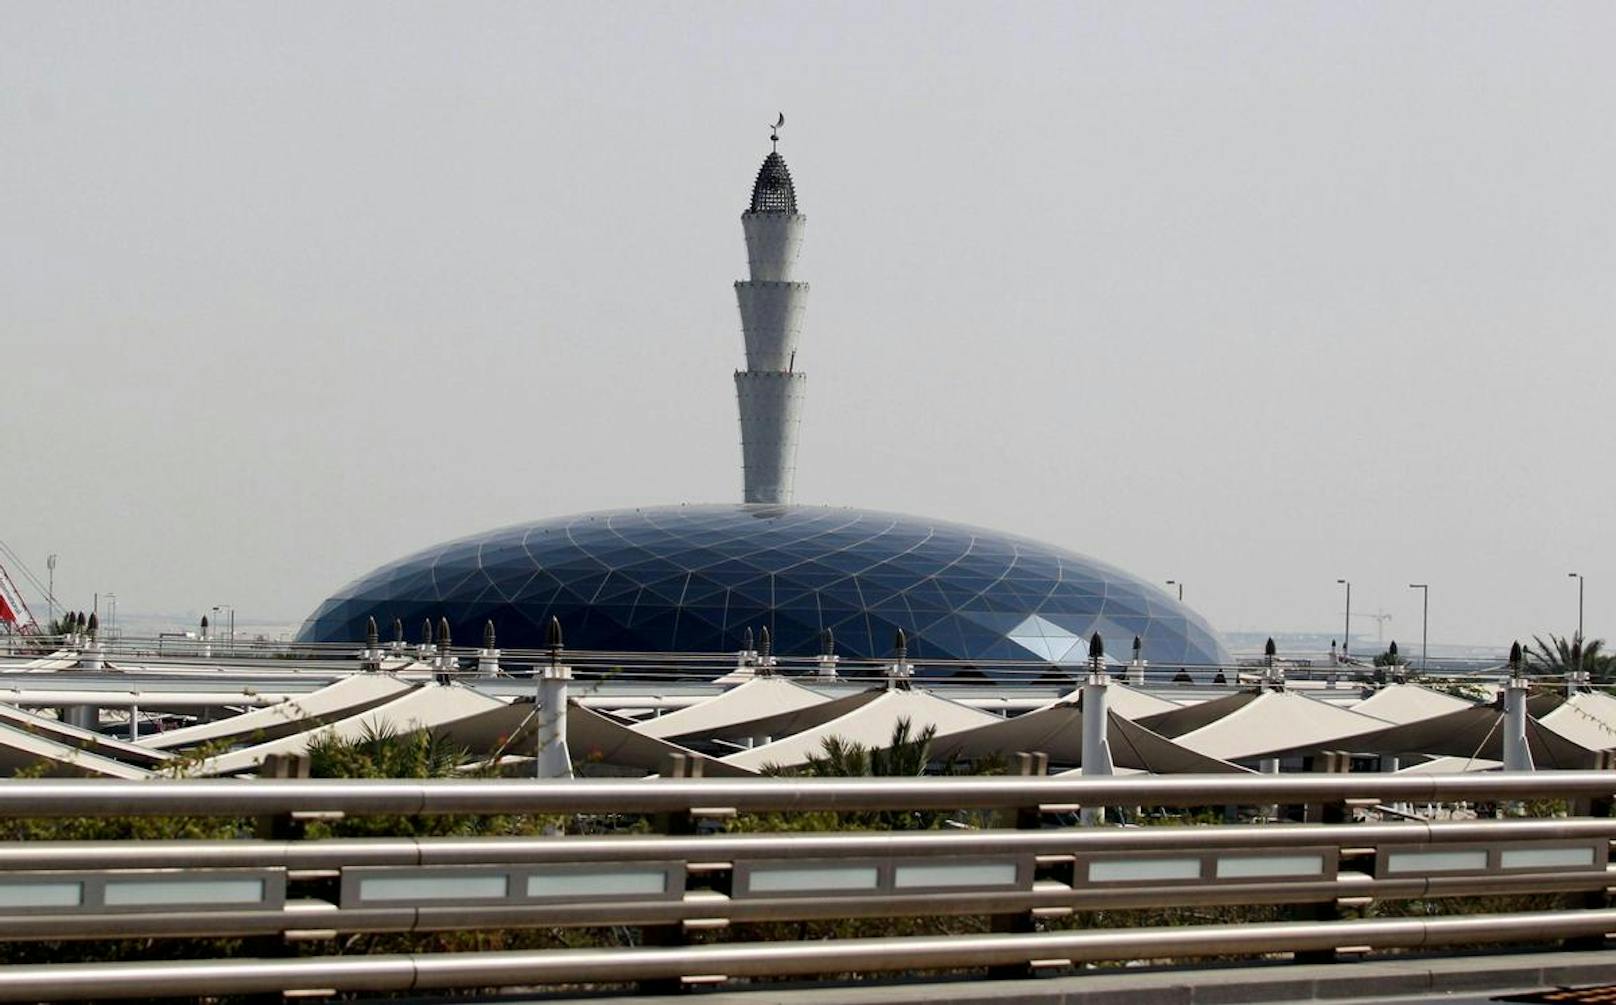 Jetzt hat sich die Regierung des Golfemirats Katar dafür entschuldigt (im Bild: die Moschee am internationalen Flughafen von Doha).